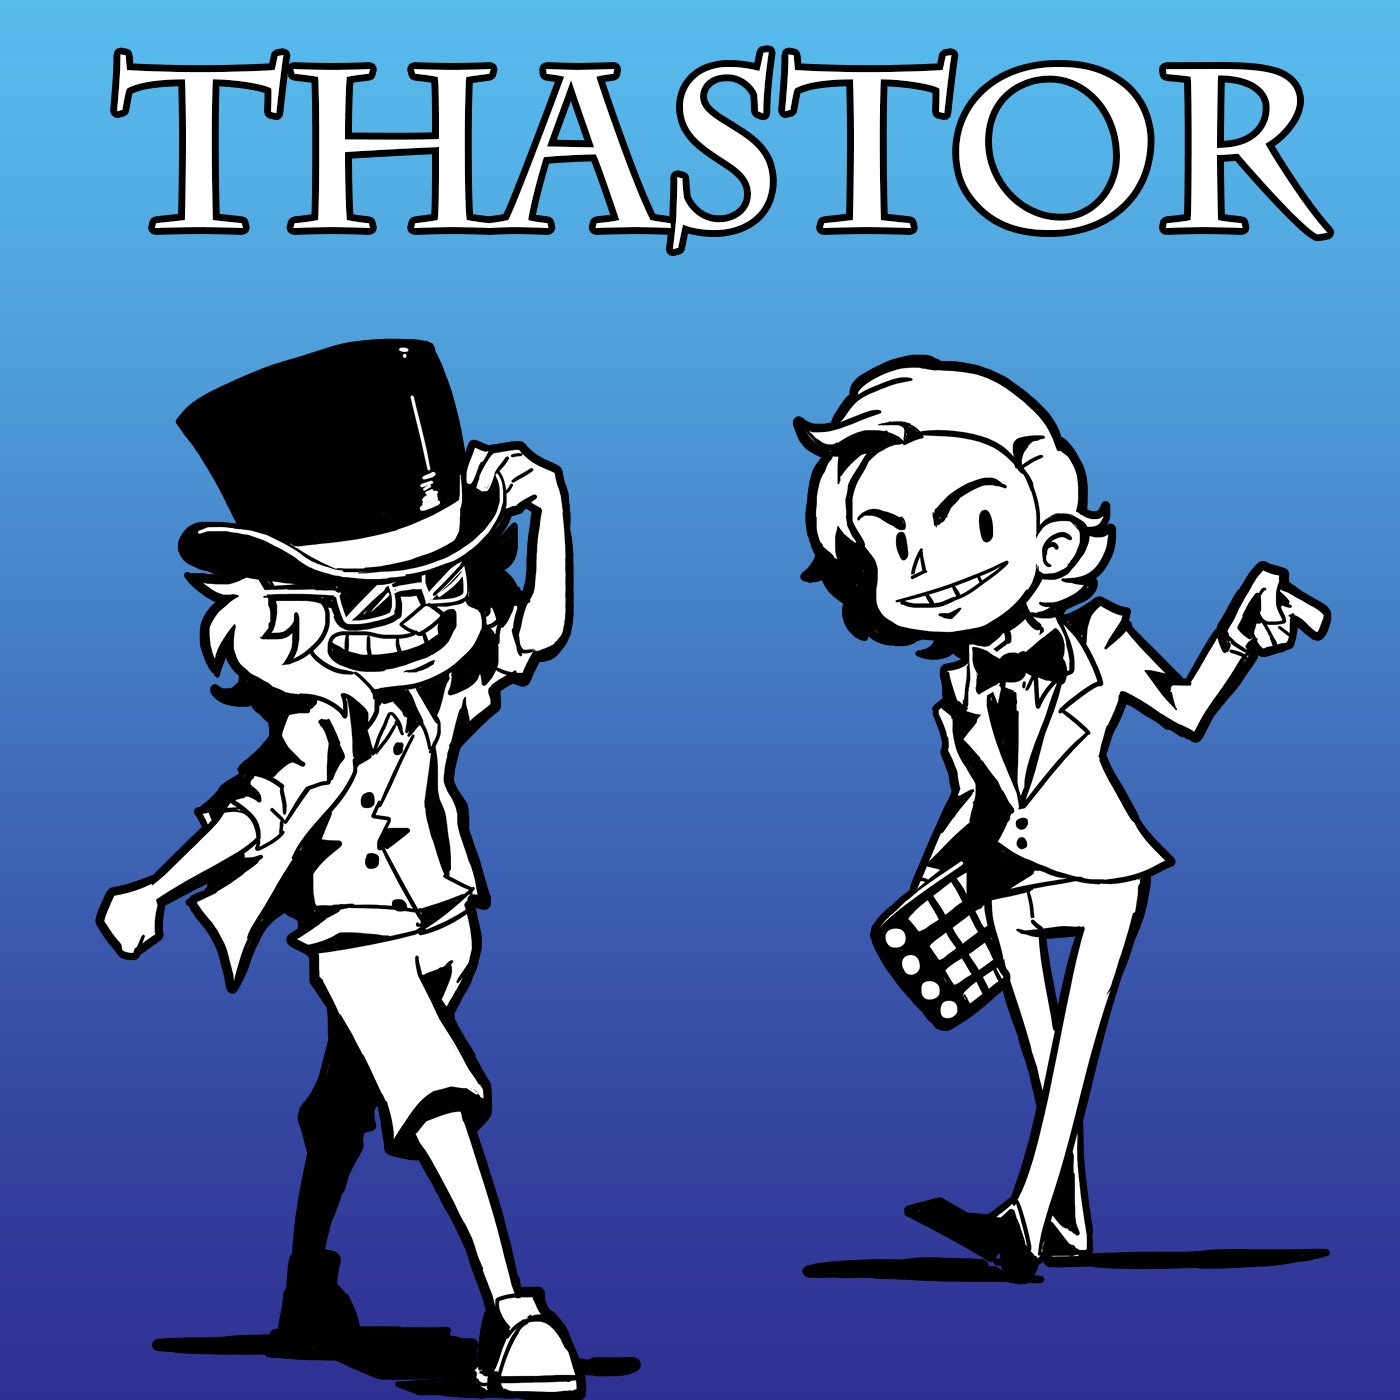 Thastor